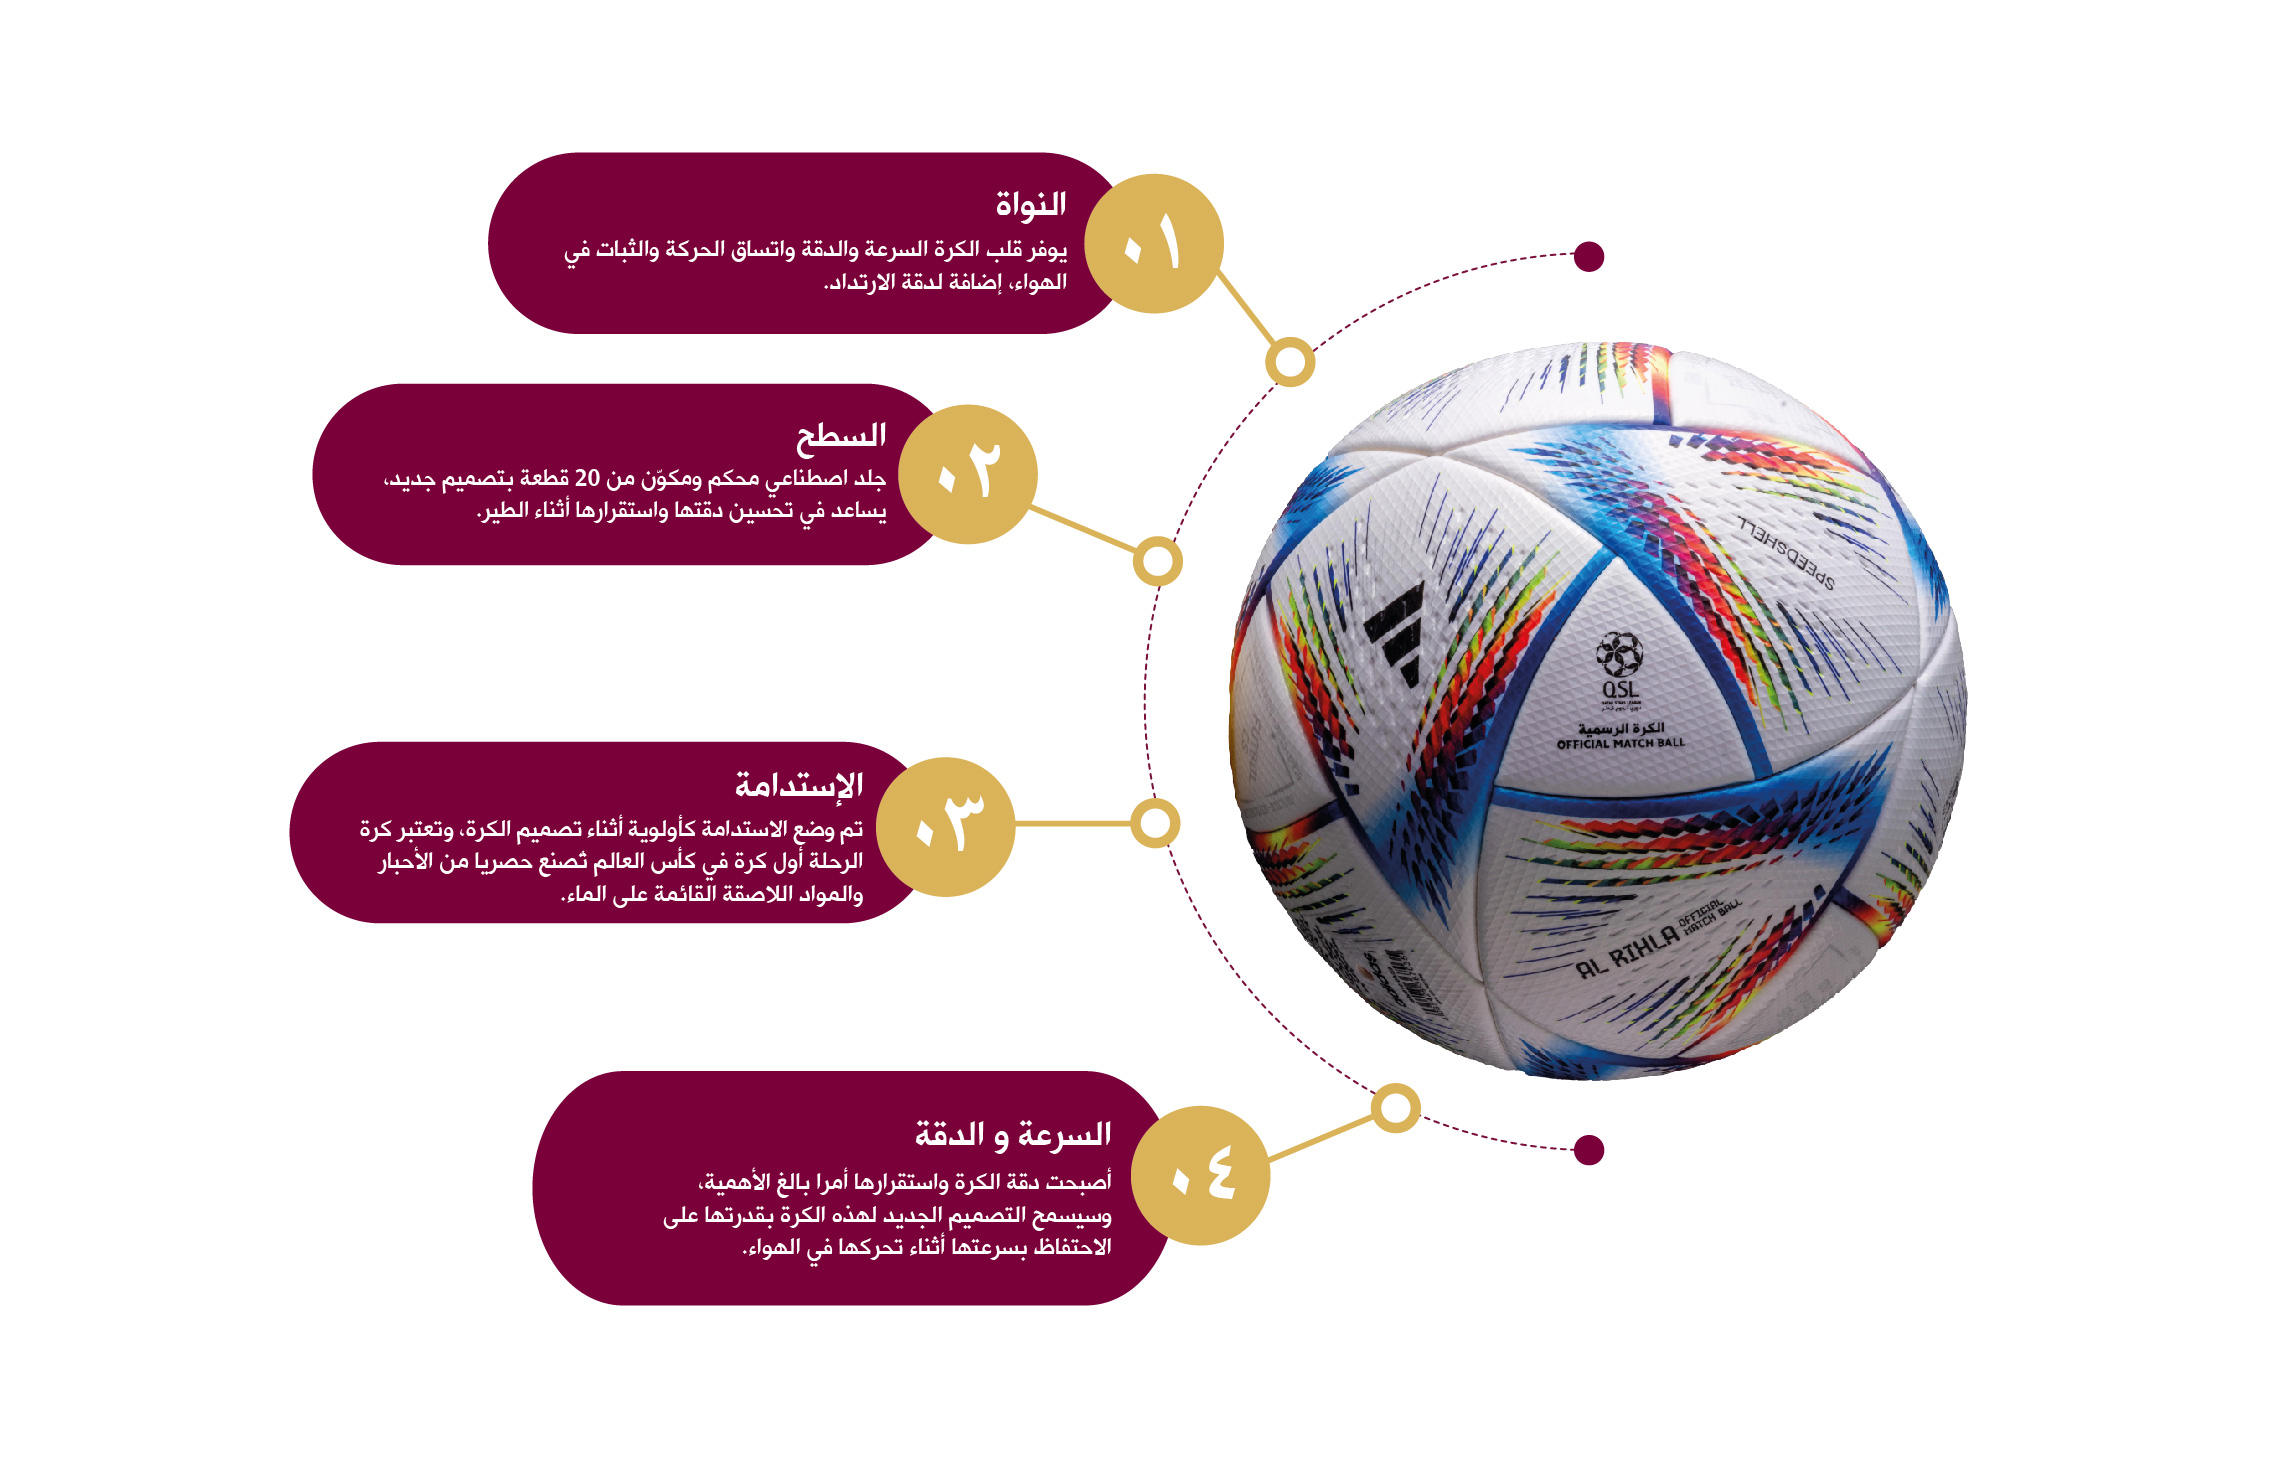 QSL Official ball